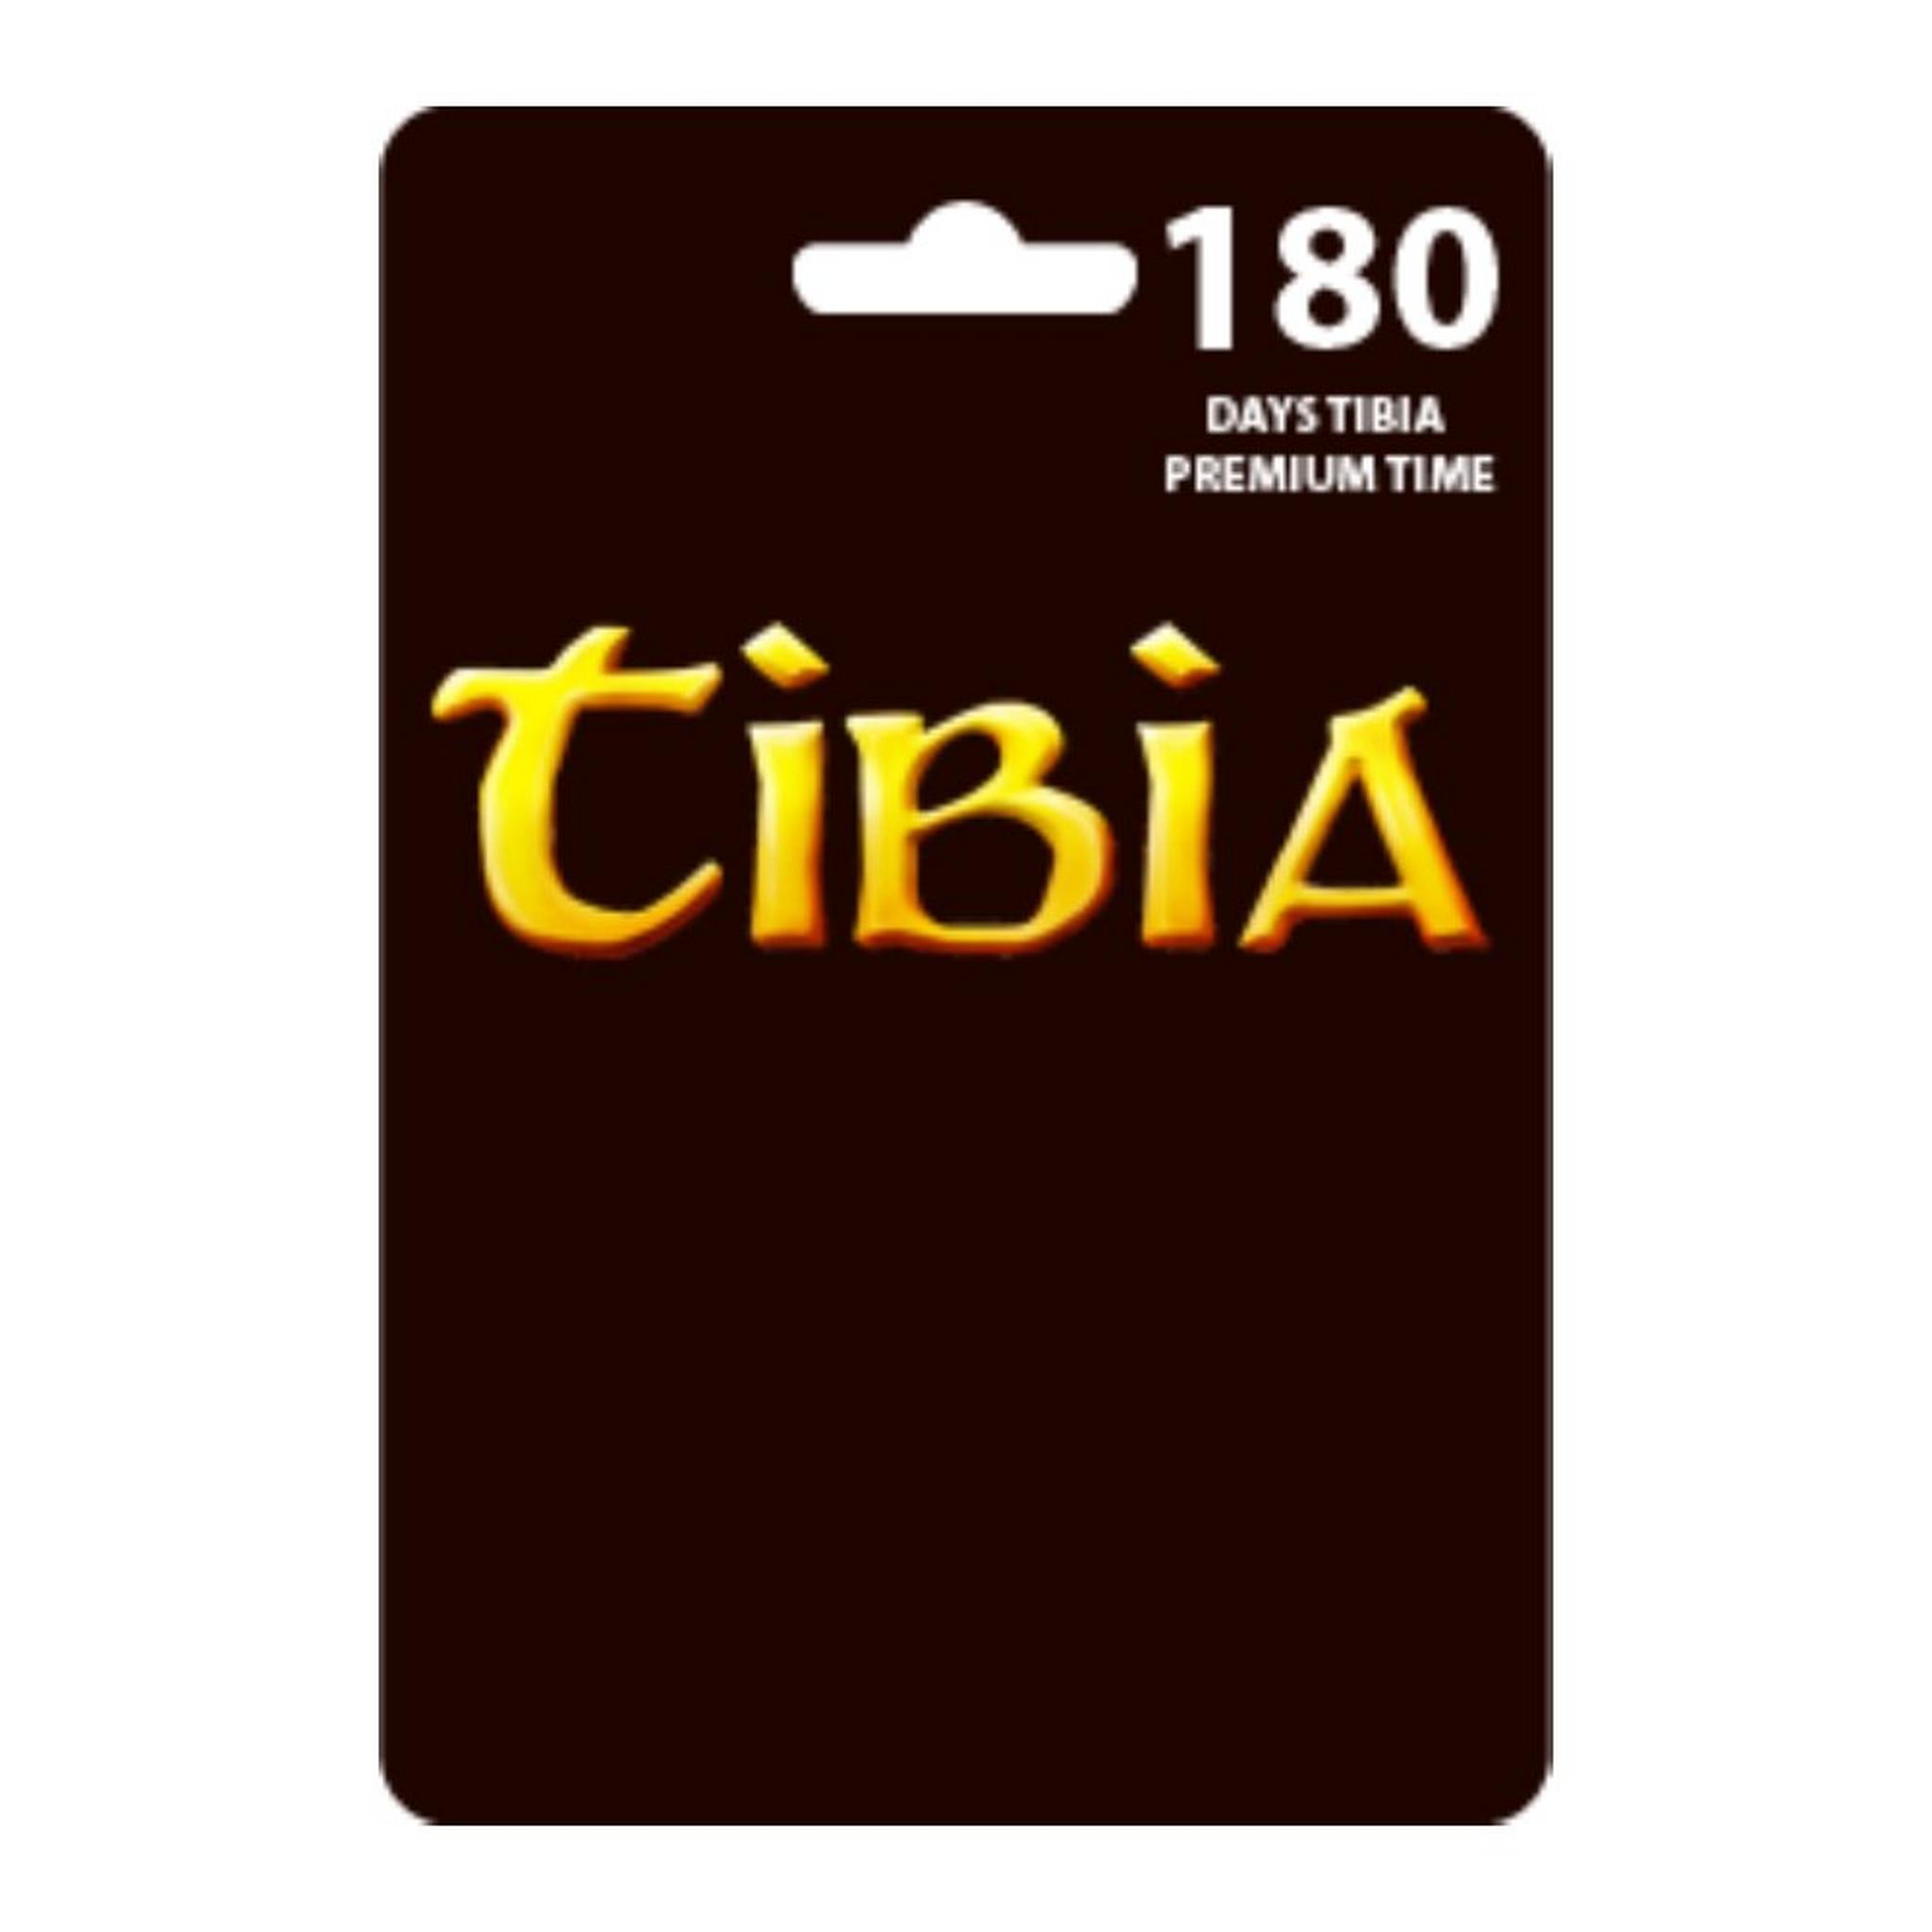 بطاقة تيبيا بريميوم لمدة 180 يوم